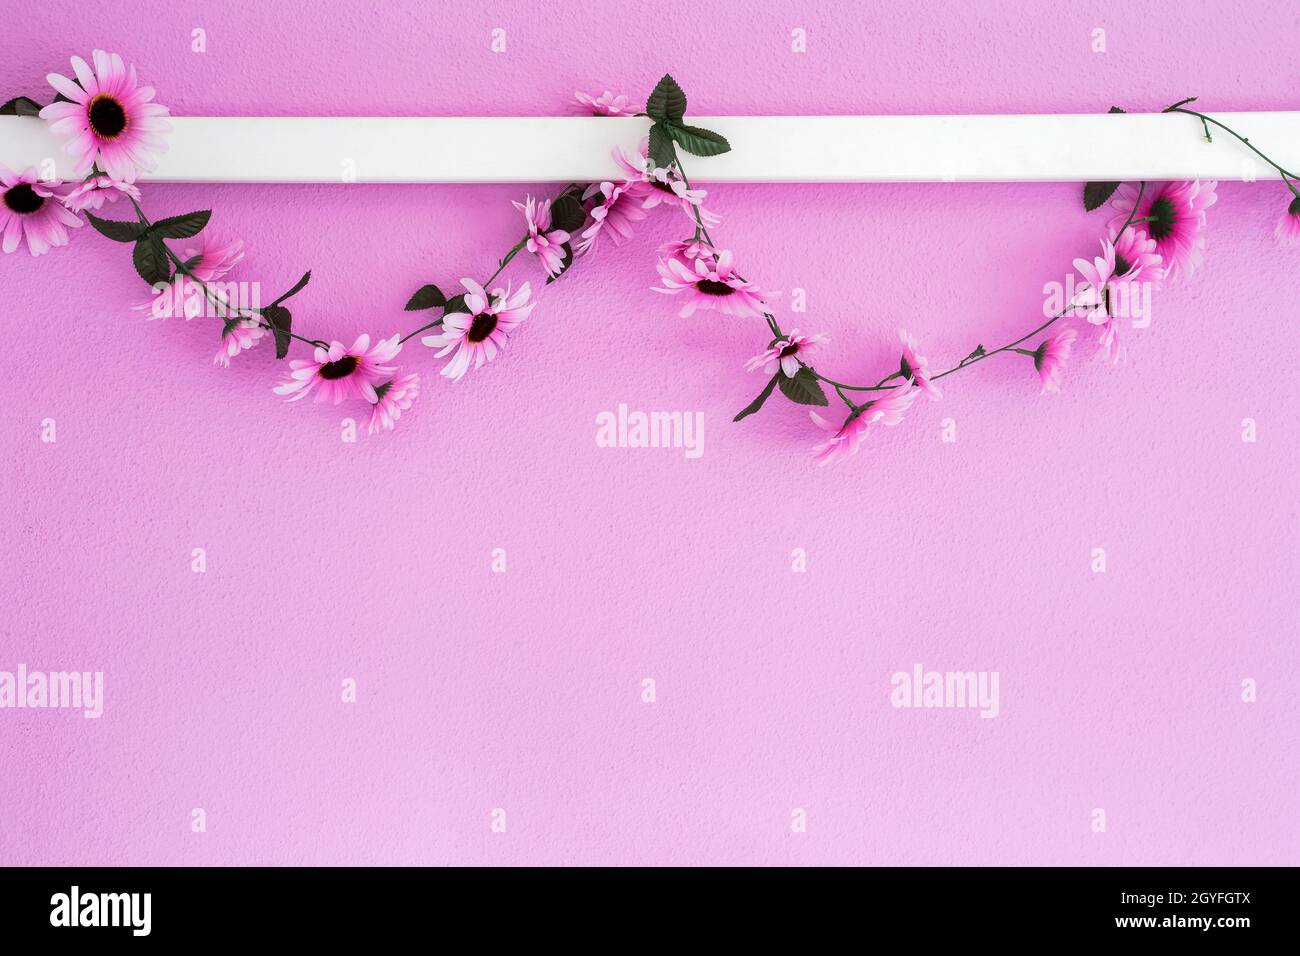 Allegro, rosa colorato, margherite viola garland appeso su sfondo rosa parete texture. Bello design moderno con spazio copia decorazione astratta w Foto Stock